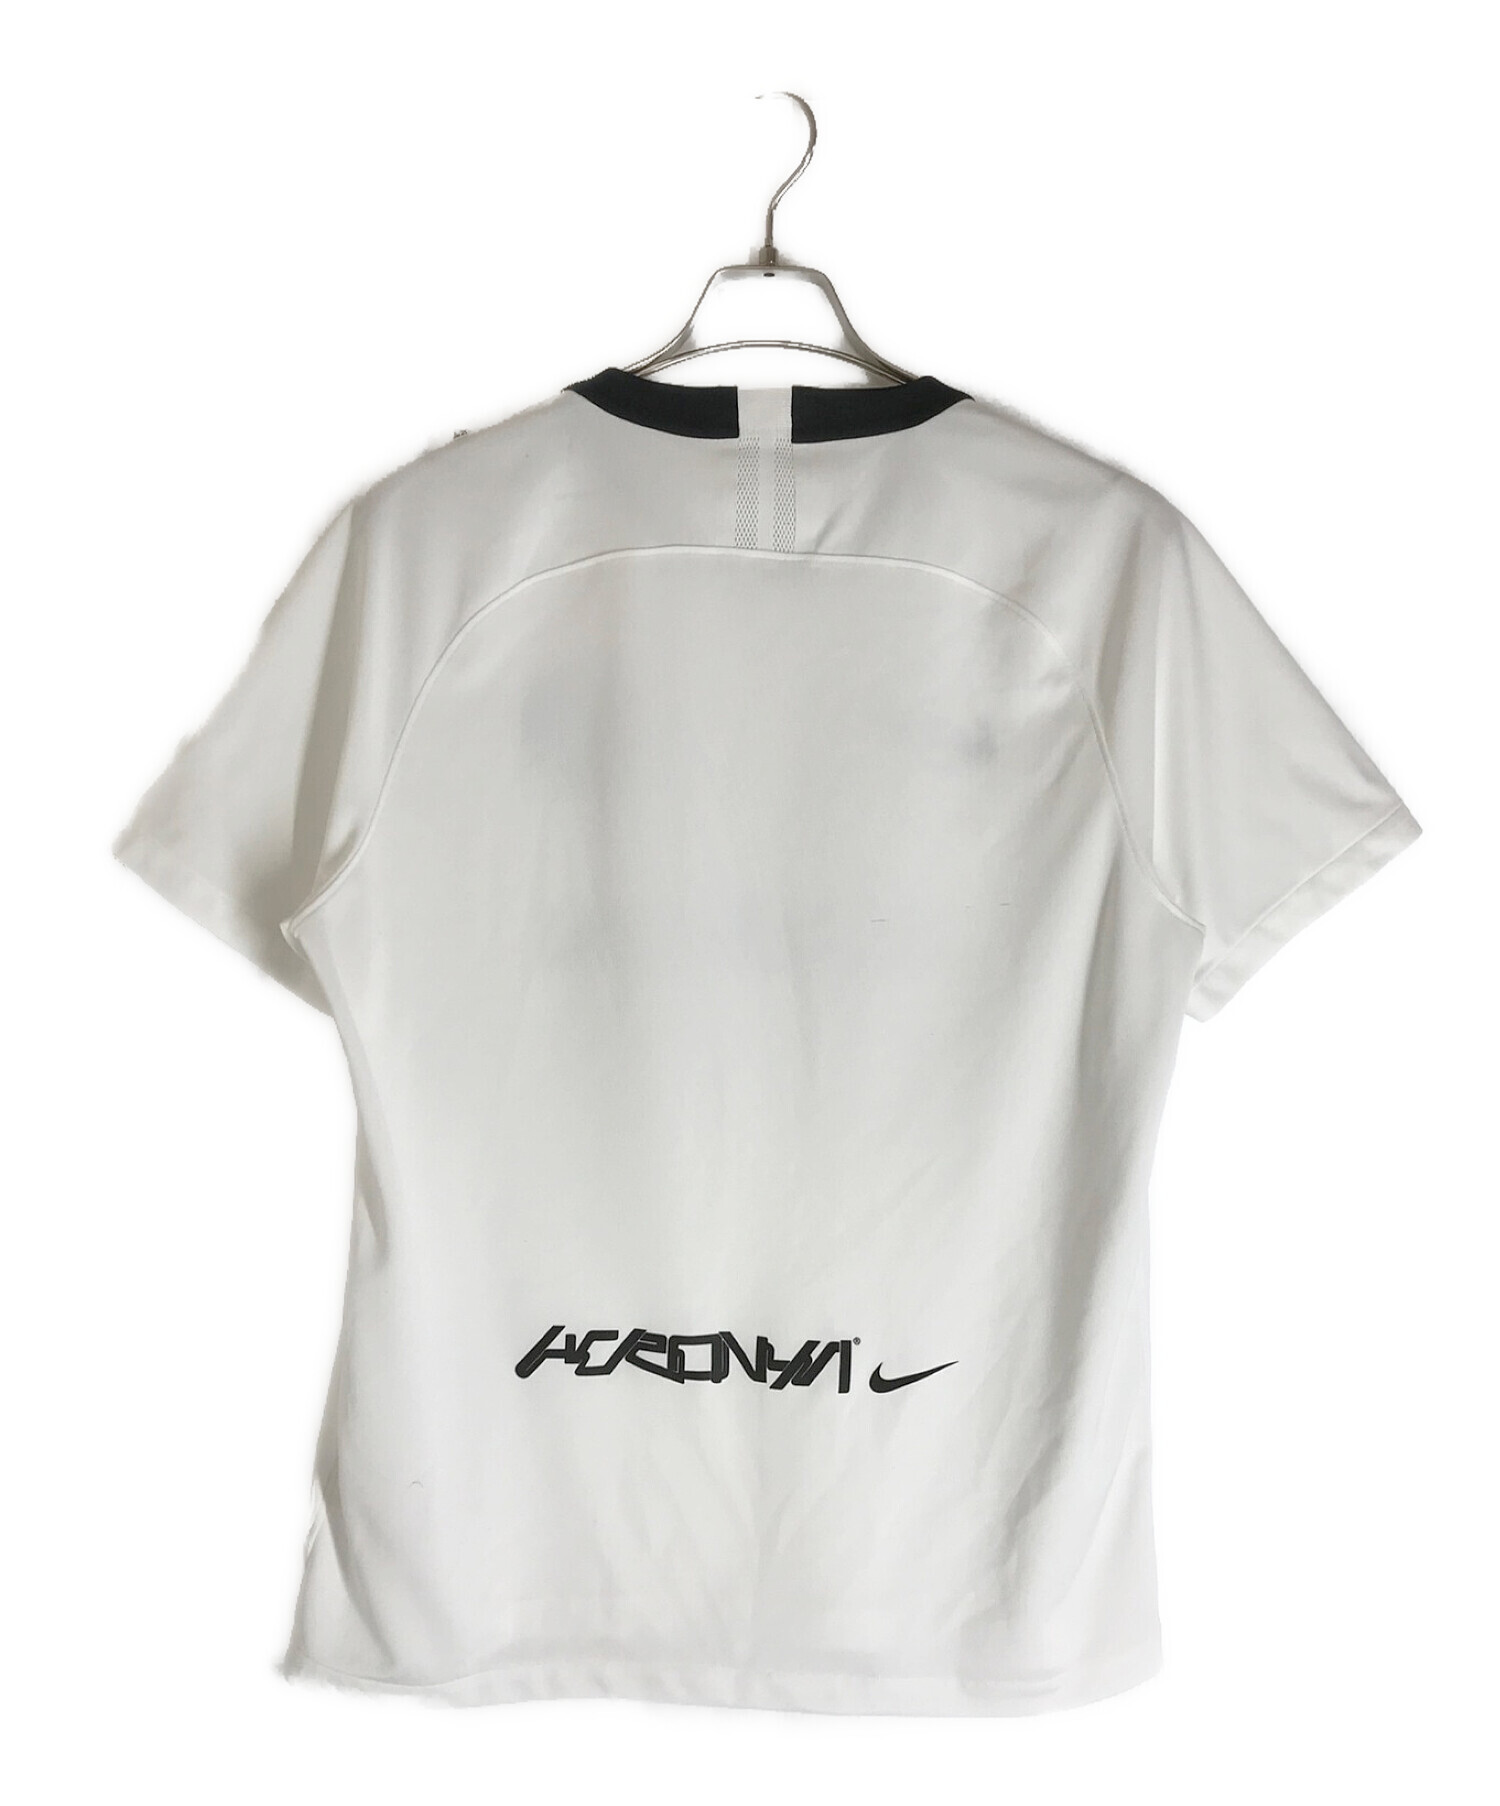 NIKE×ACRONYM (ナイキ×アクロニウム) コラボゲームシャツ ブラック×ホワイト サイズ:XL